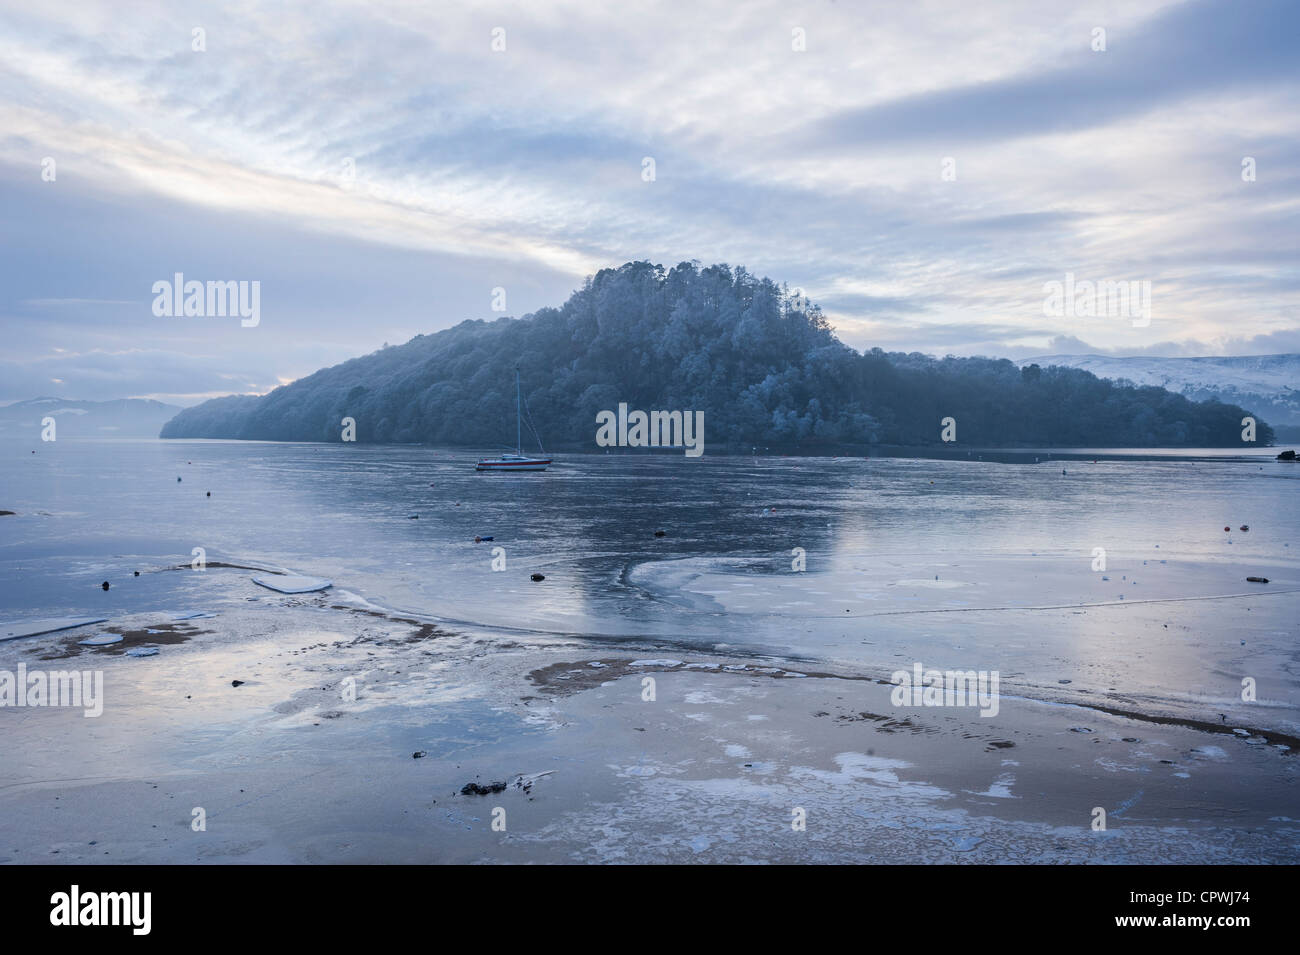 Gefrorenes Wasser im Winter, Loch Lomond, Schottland, Vereinigtes Königreich  Stockfotografie - Alamy